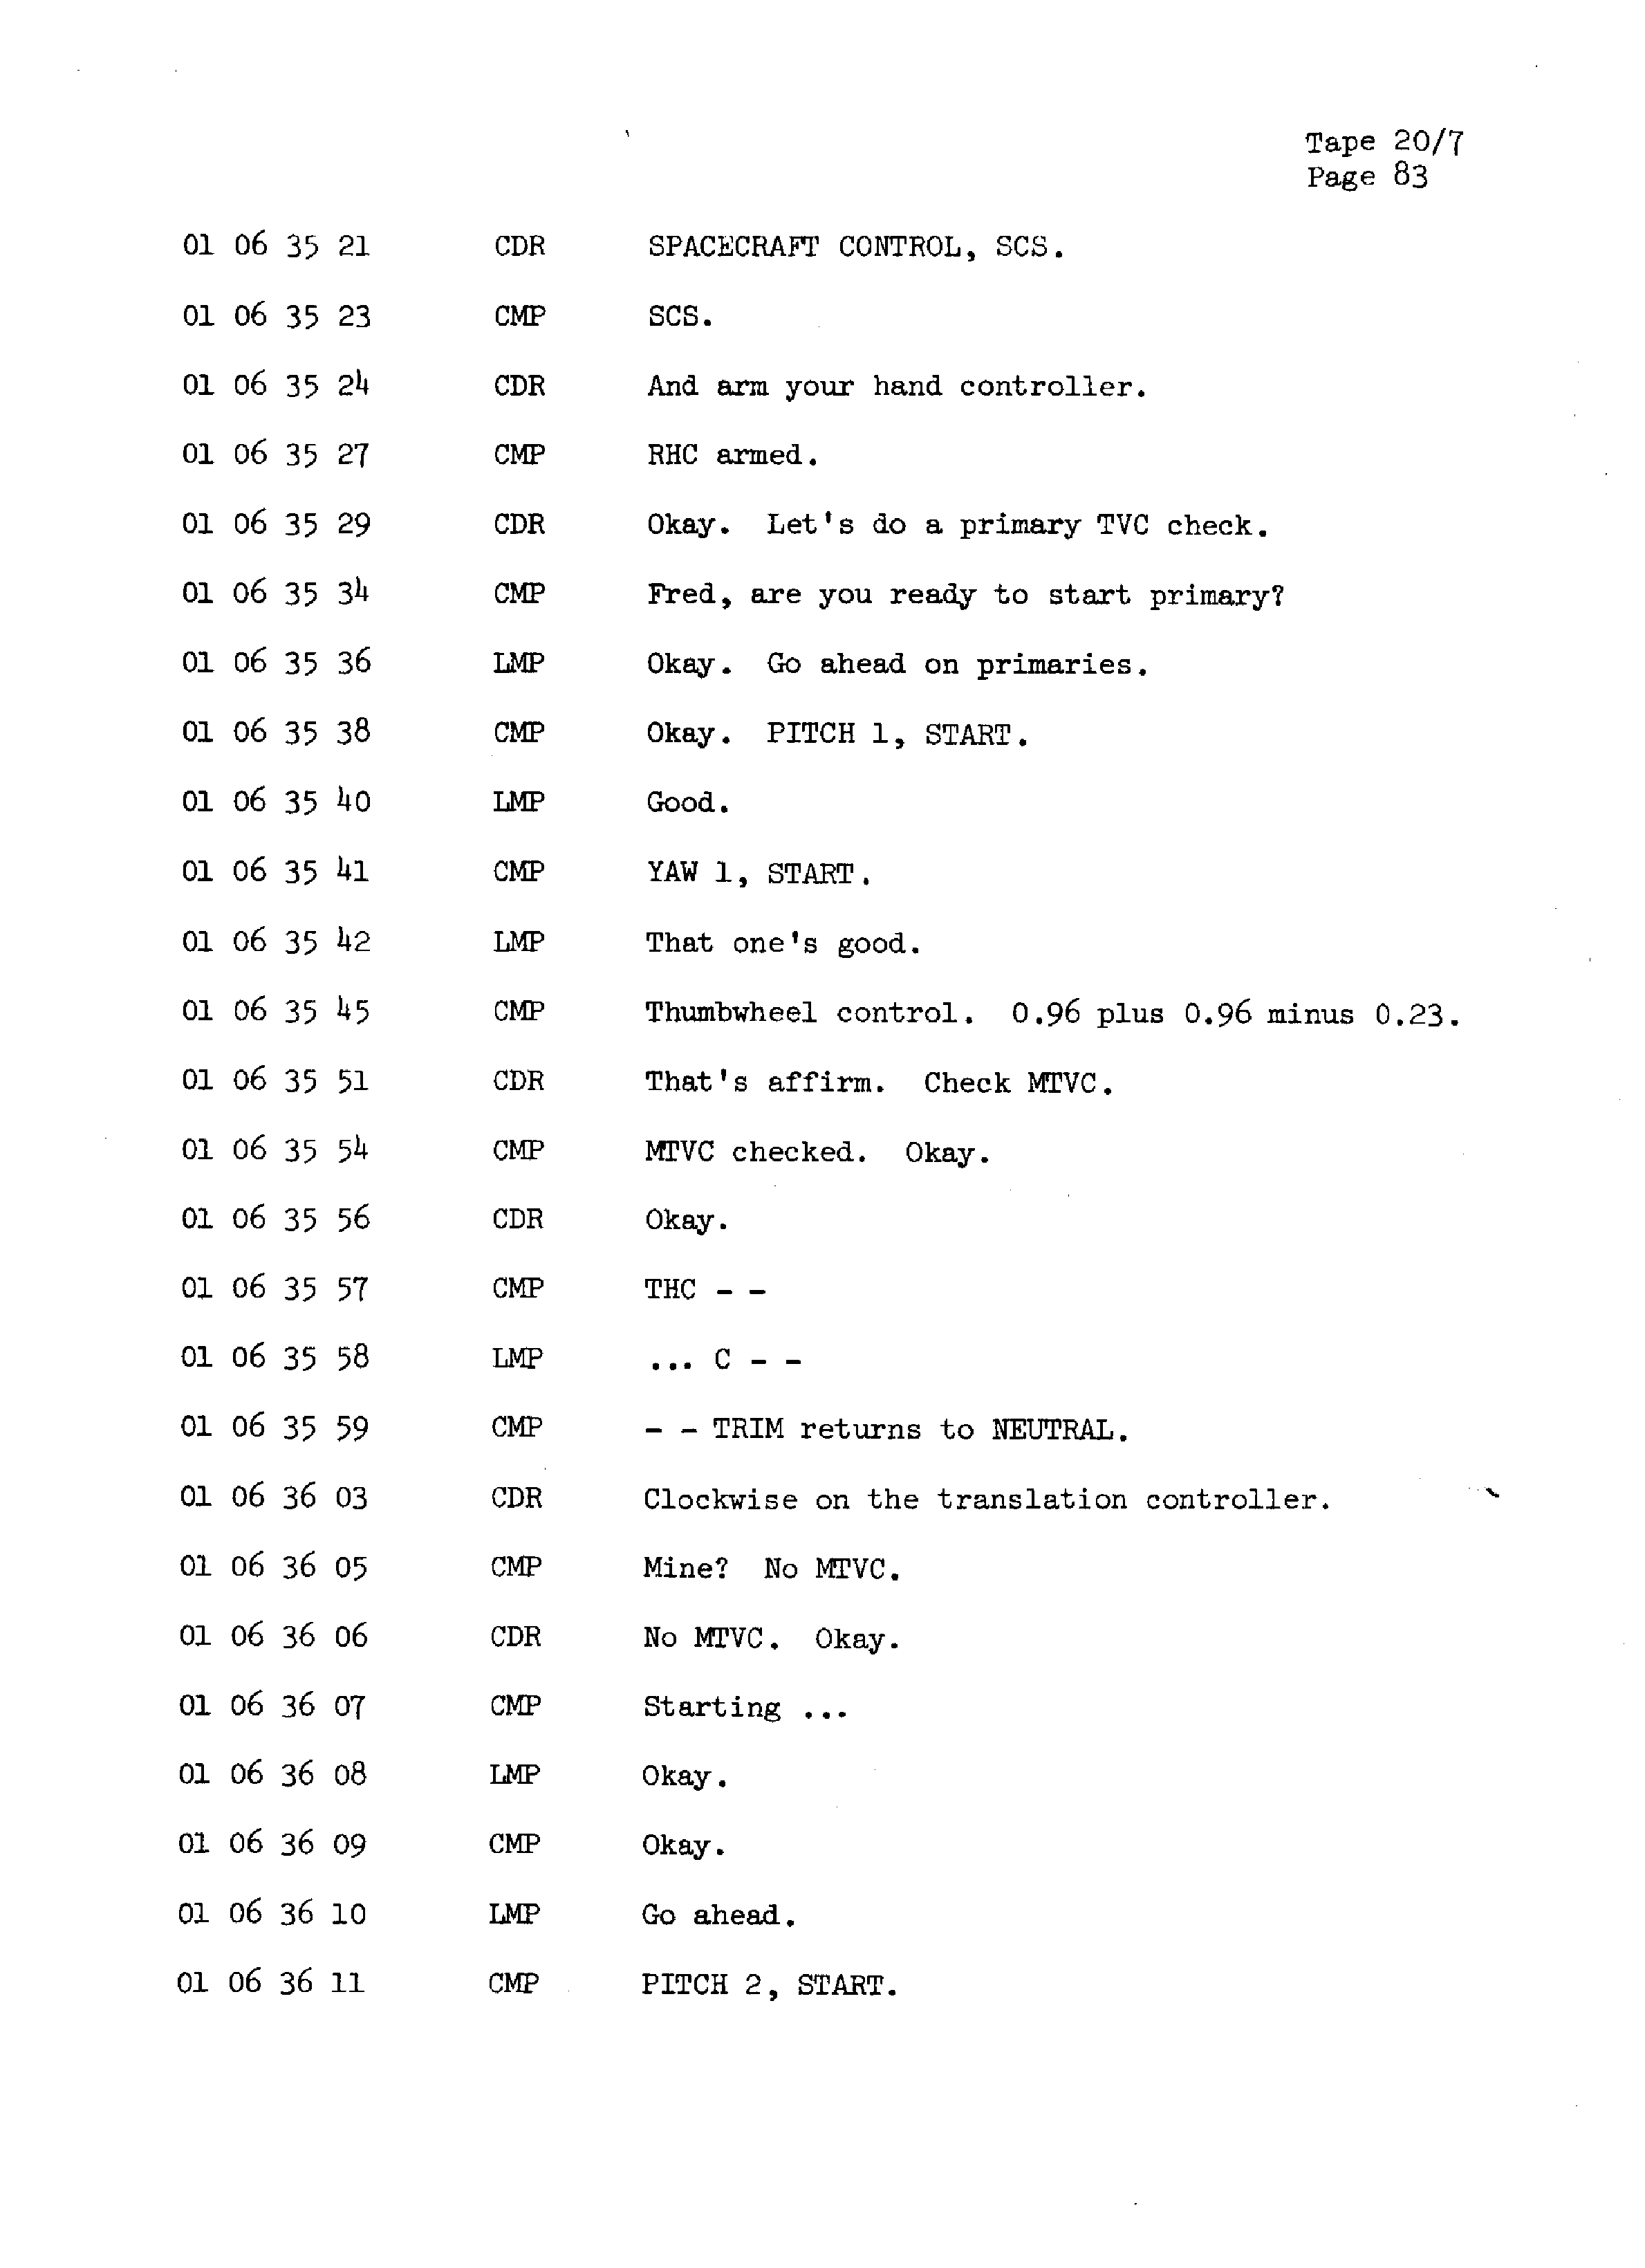 Page 90 of Apollo 13’s original transcript